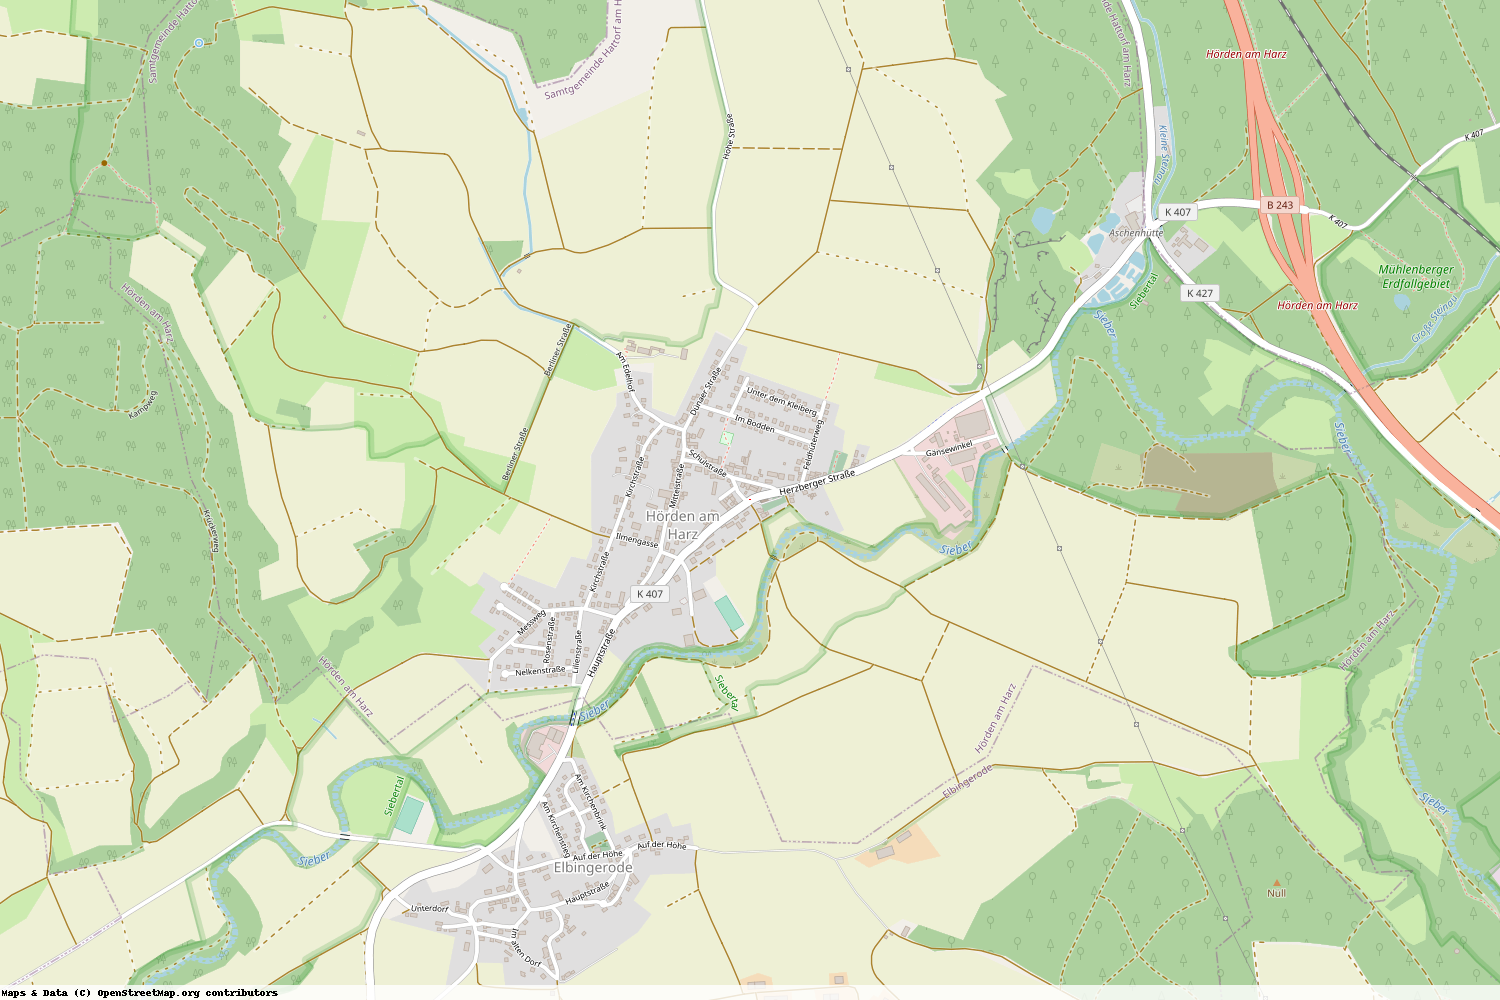 Ist gerade Stromausfall in Niedersachsen - Göttingen - Hörden am Harz?